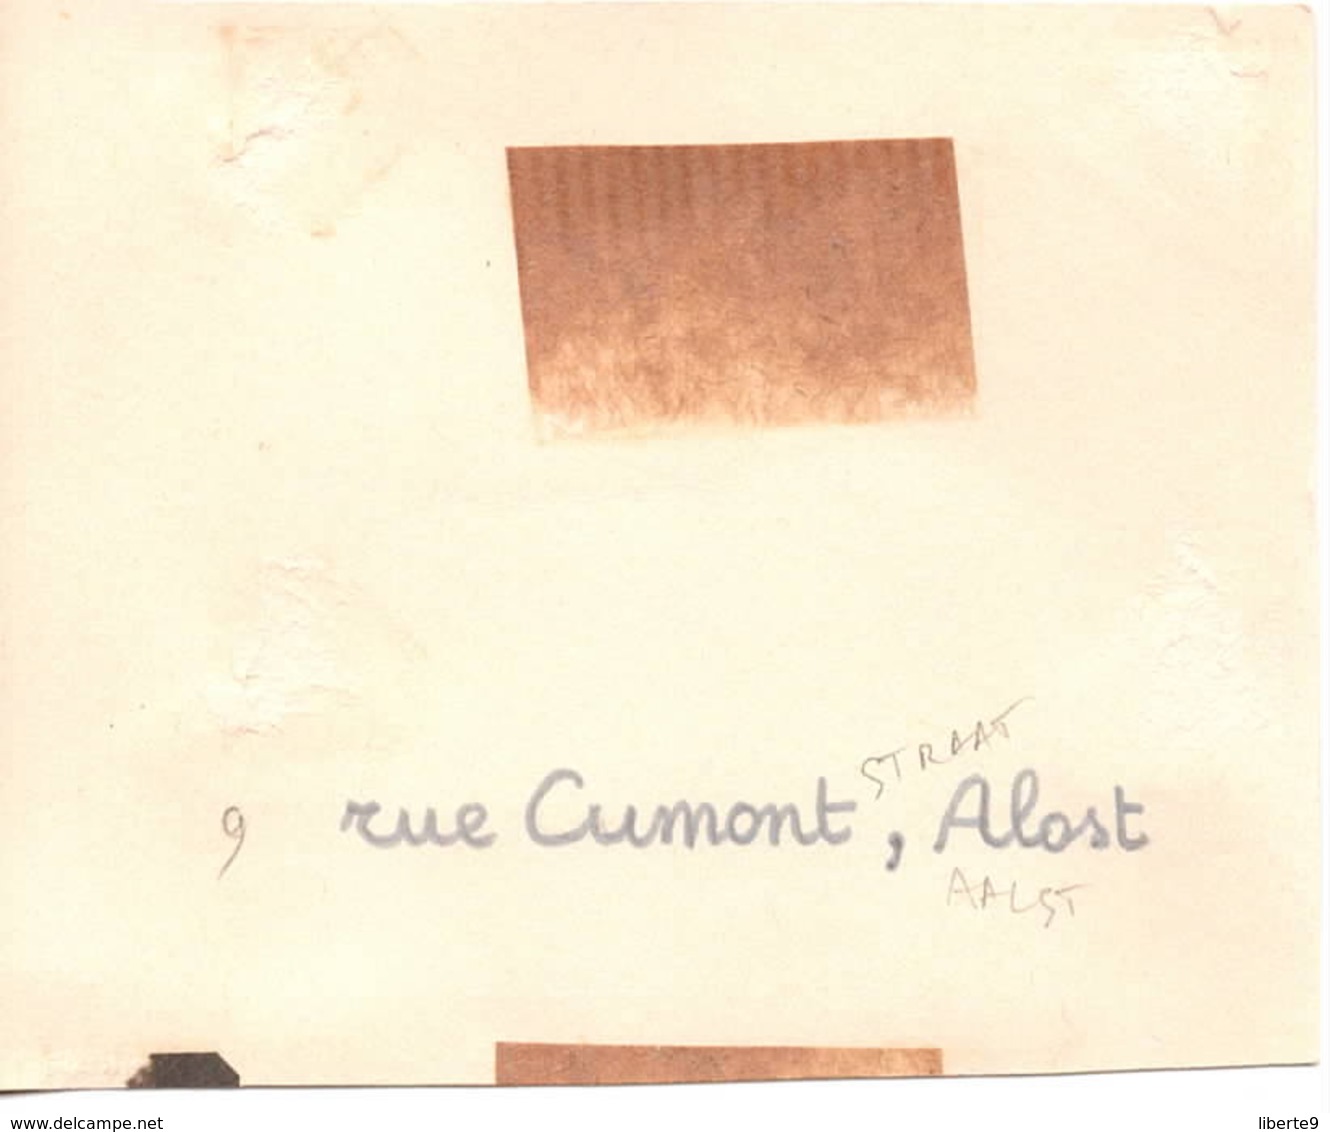 9 Rue Cumontstraat 1944  Aalst Alost - Photo 6x9cm  Belgique - Automobiles